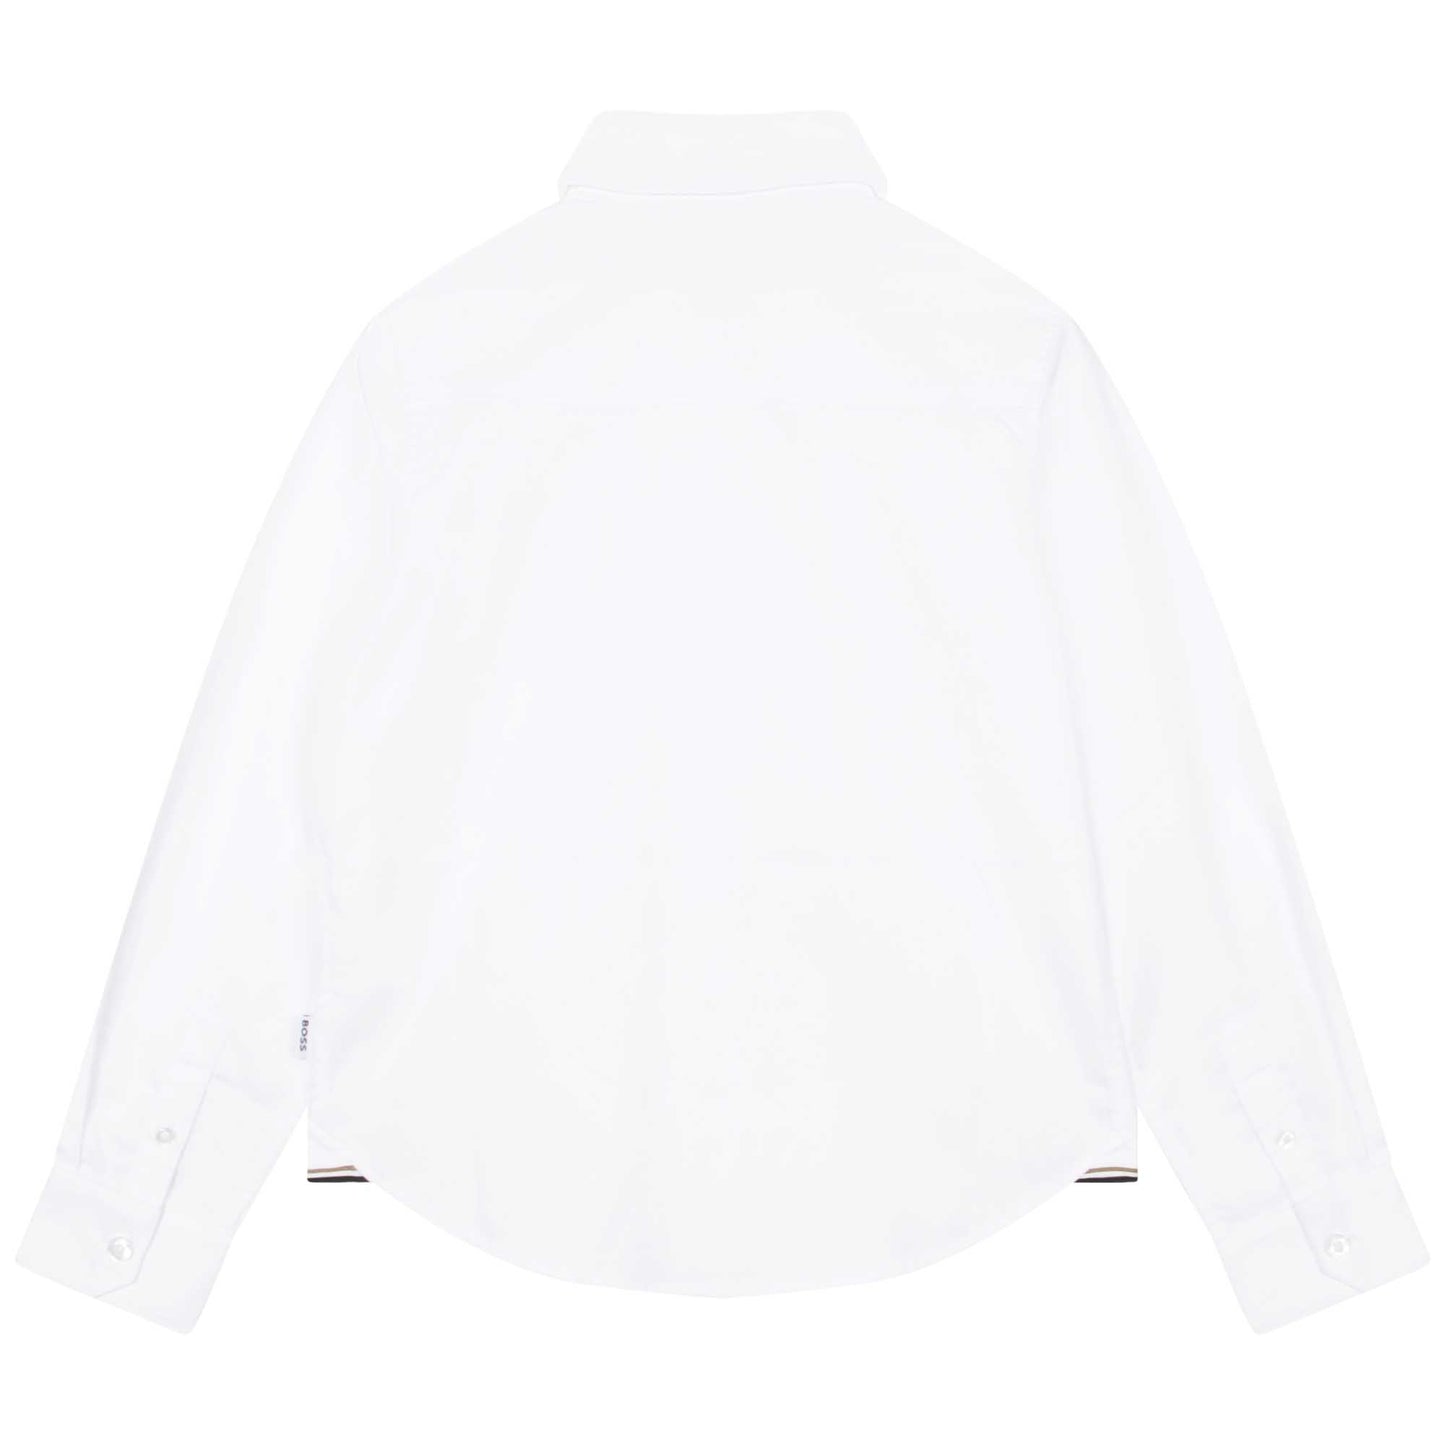 Hugo Boss Boys Long Sleeved Slim Fit Dress Shirt _White J25O35-10P